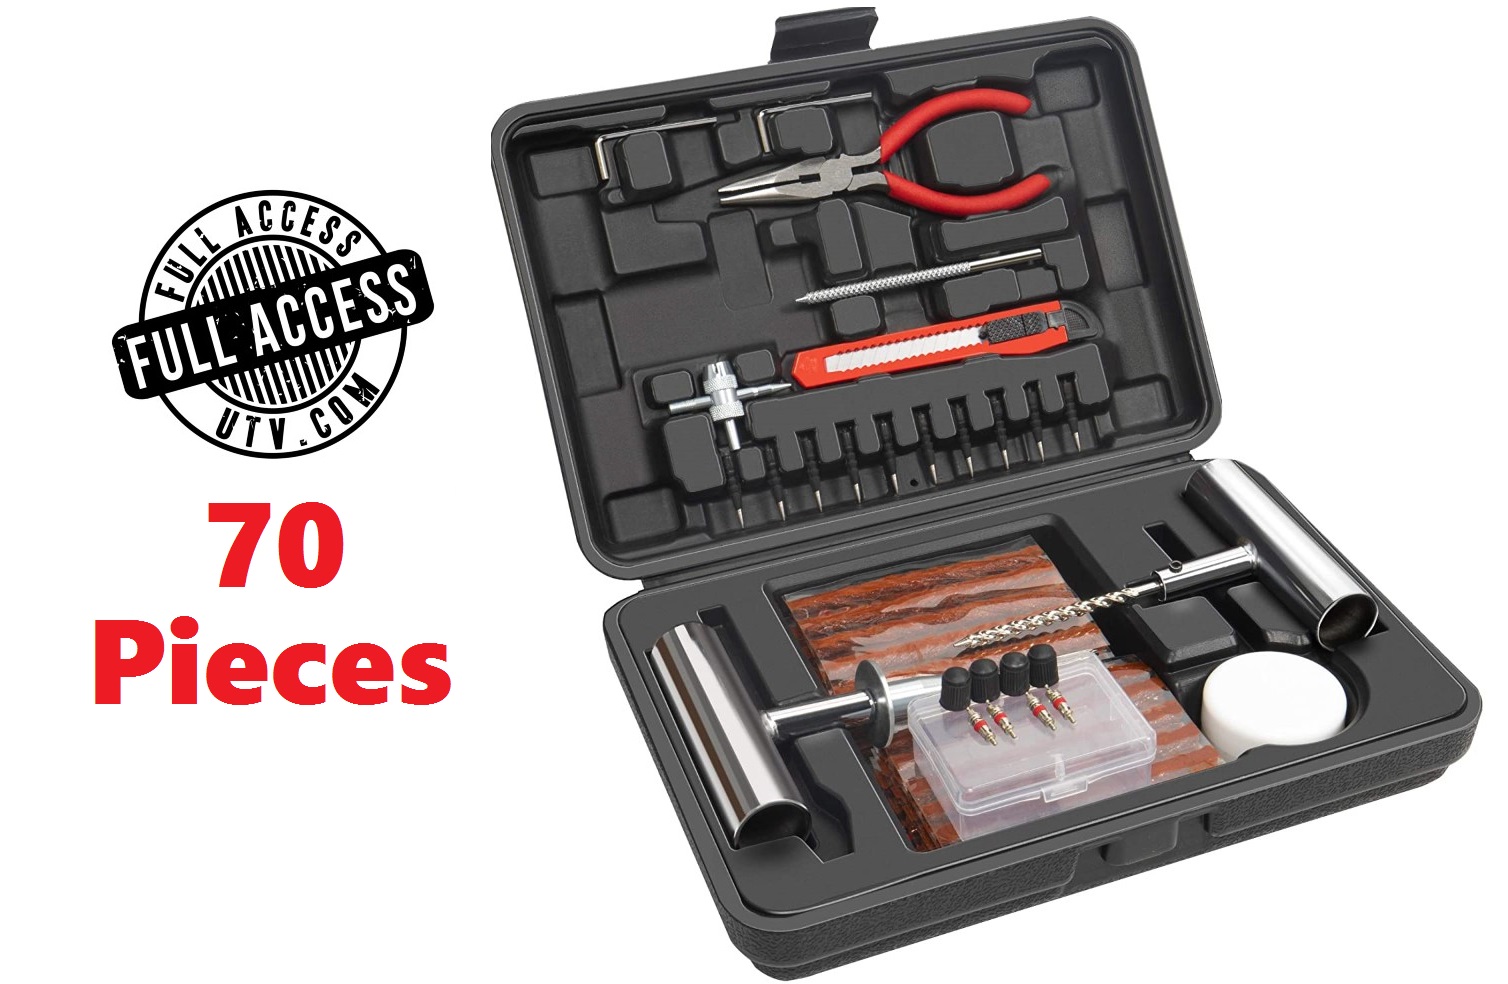 Full Access Tire Repair Kit, 70 Pieces!